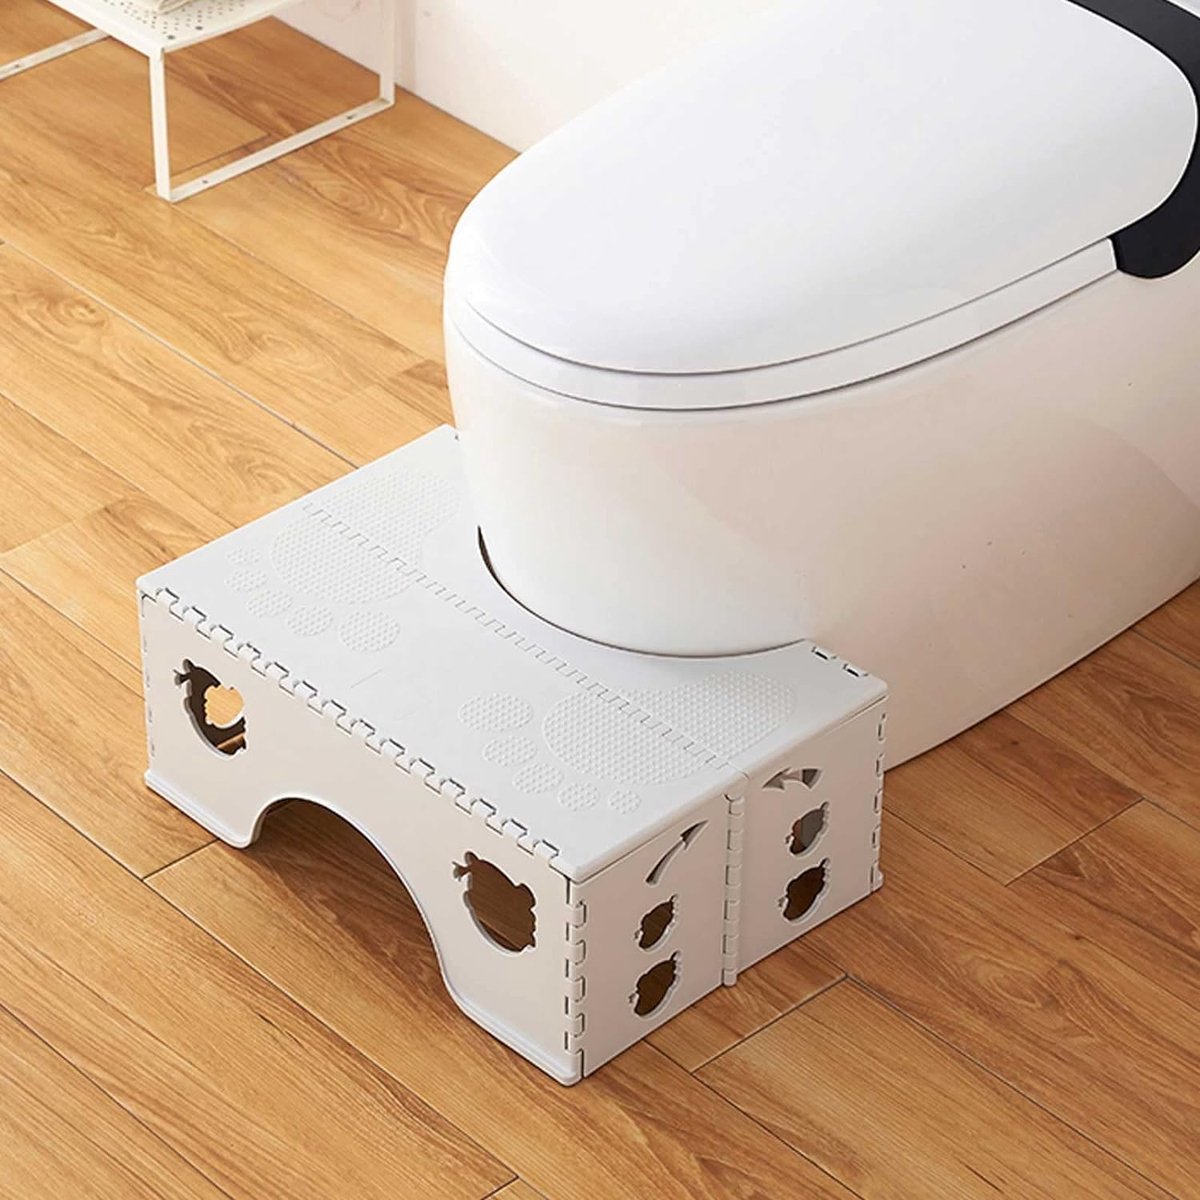 Pliable Toilette Accroupie Tabouret Non-slip Toilette Repose-pieds Anti des  Selles Constipation Portable Étape pour La Maison Salle de Bains